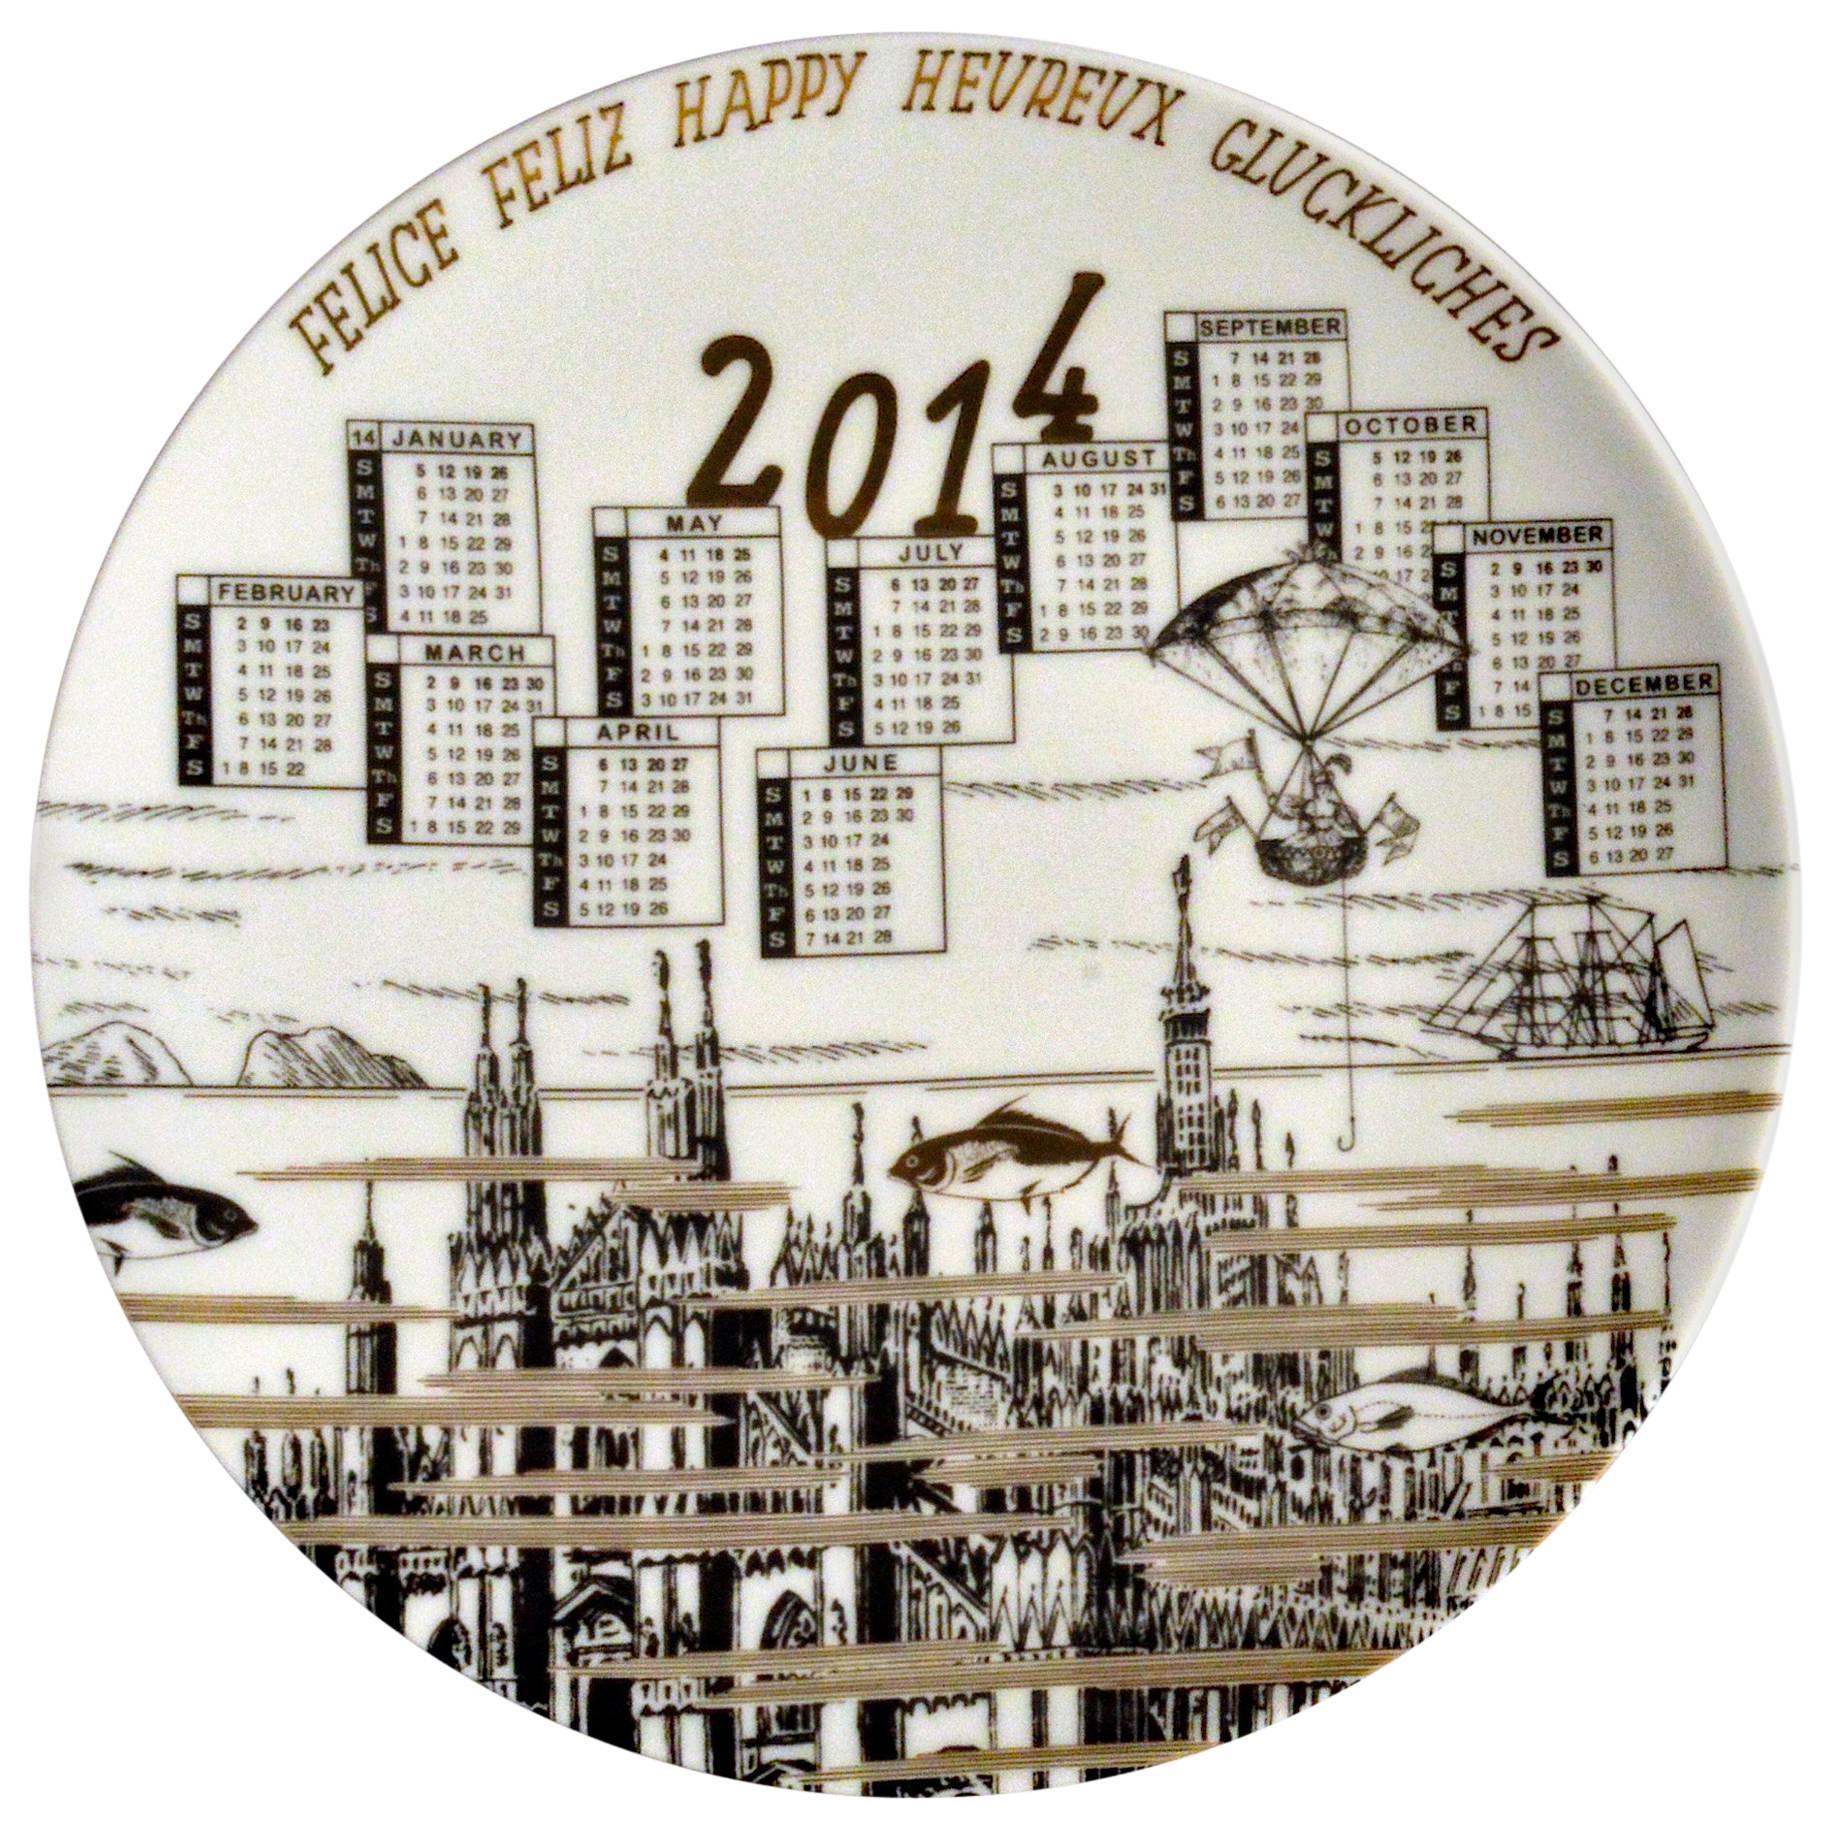 Barnaba Fornasetti Porcelain Calendar Plate 2014, Number 495 of 700 Made